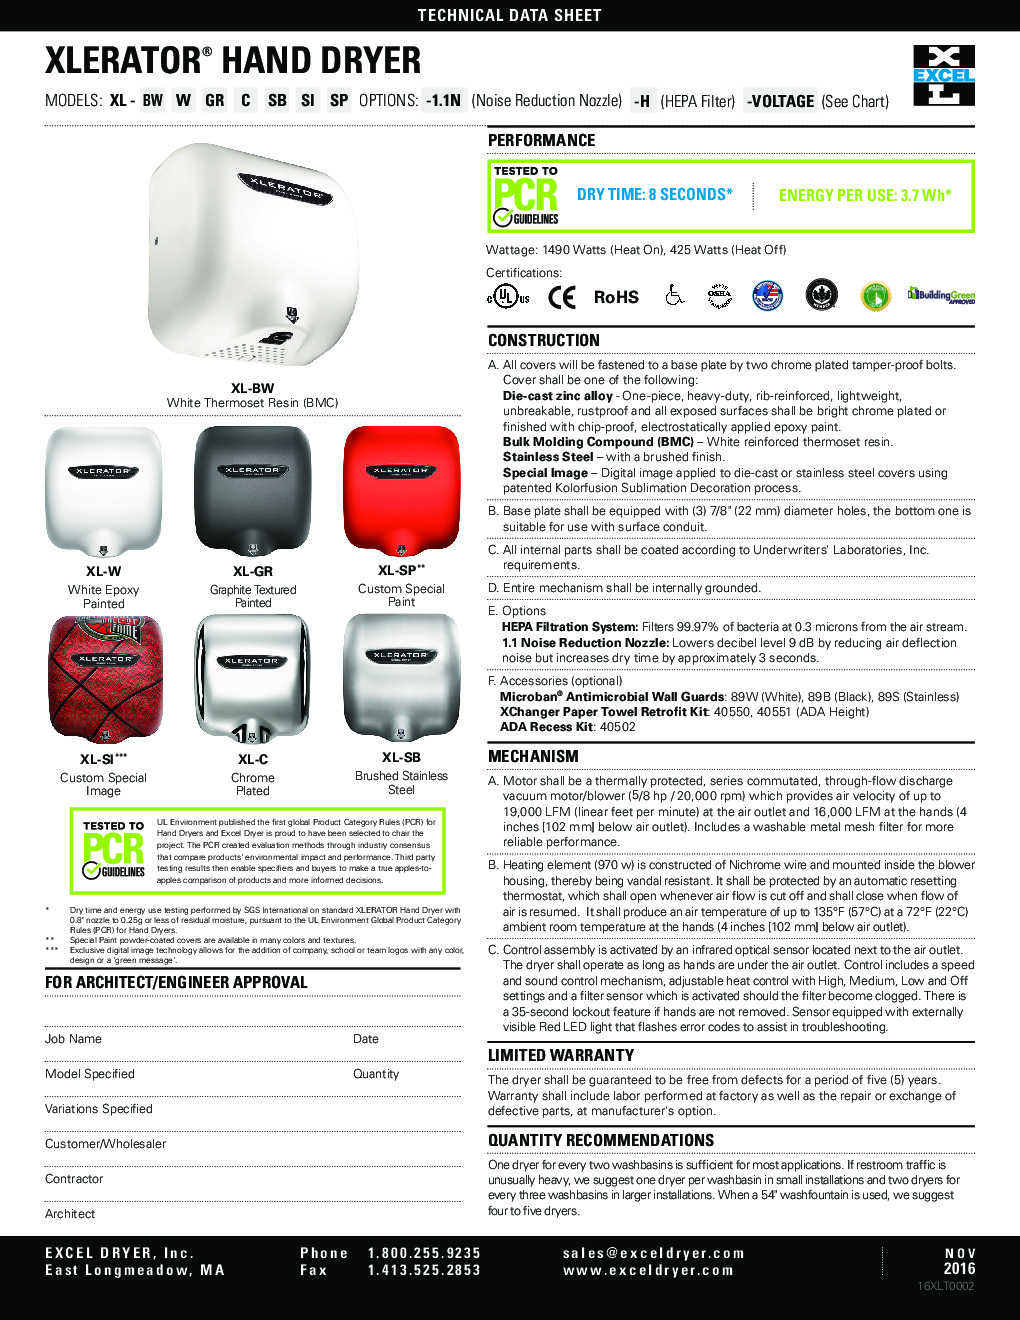 Excel Dryer XL-SP-RB Hand Dryer